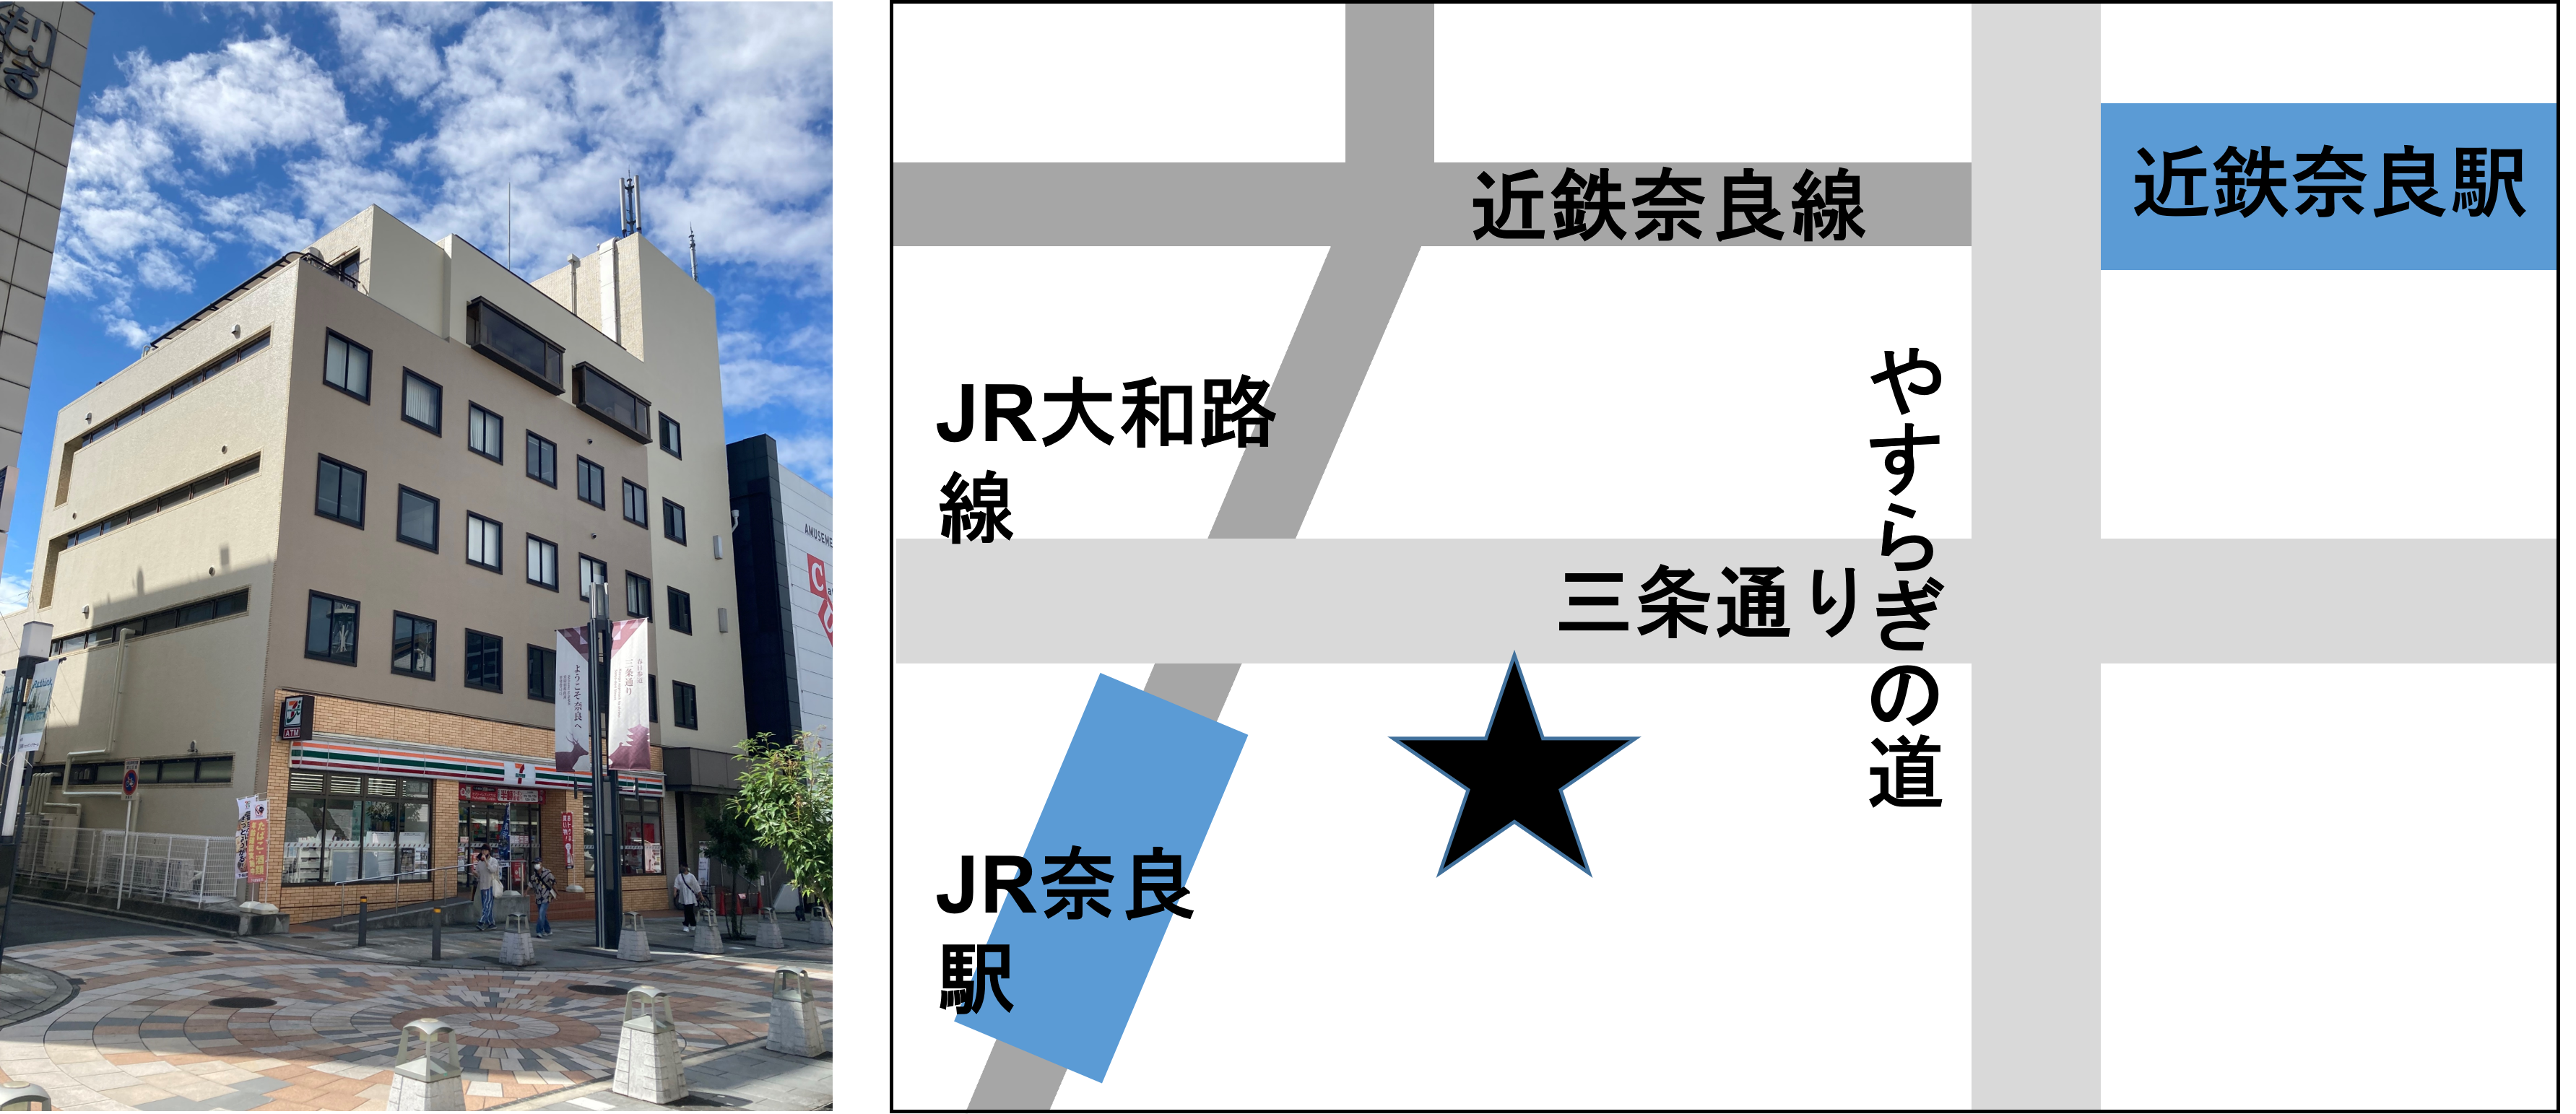 松田ビルの外観と位置図の画像